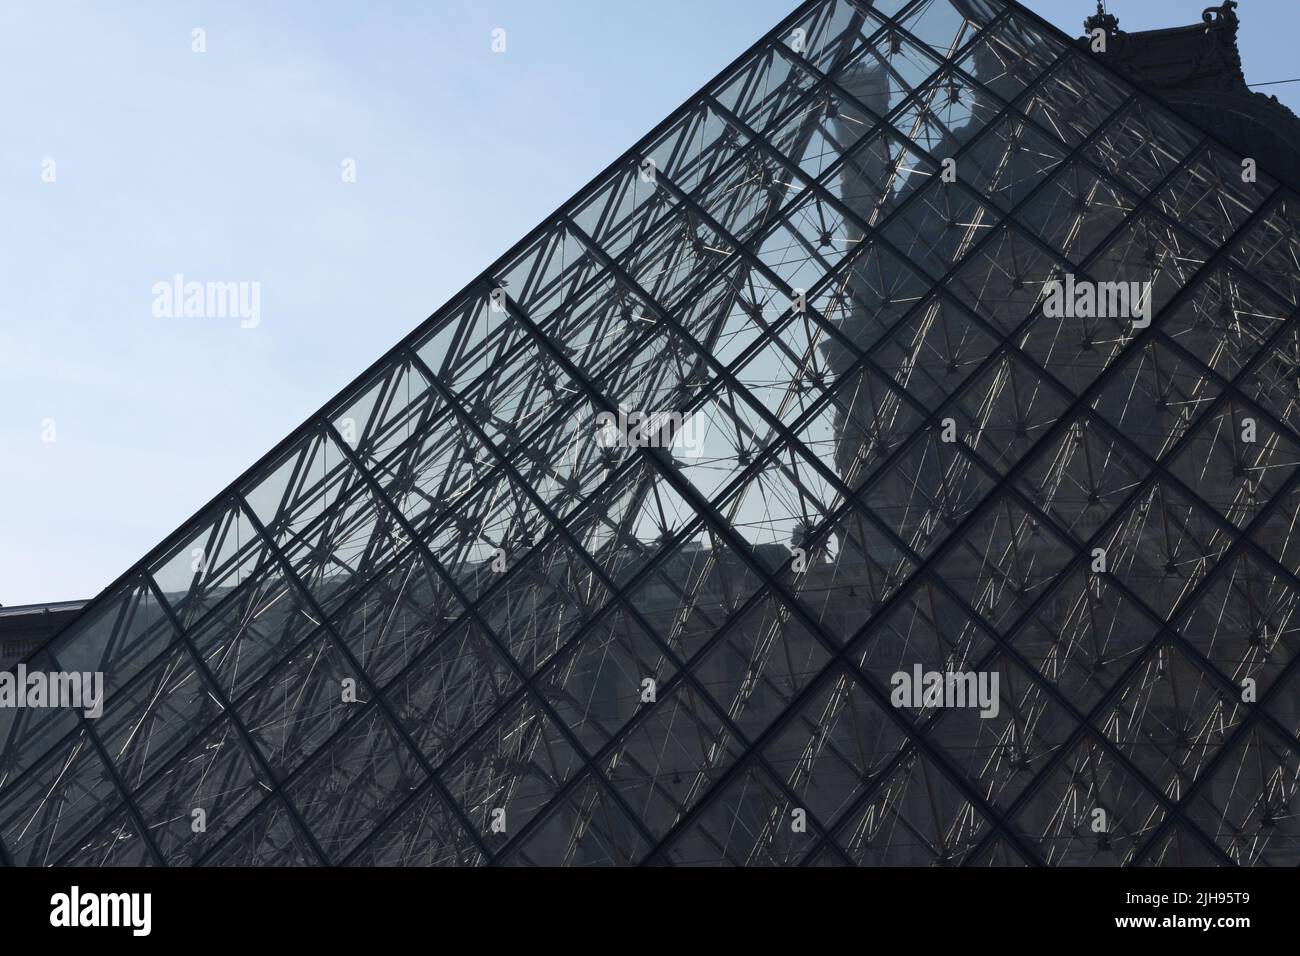 El museo de la Pirámide del Louvre en París, Francia. Foto de stock